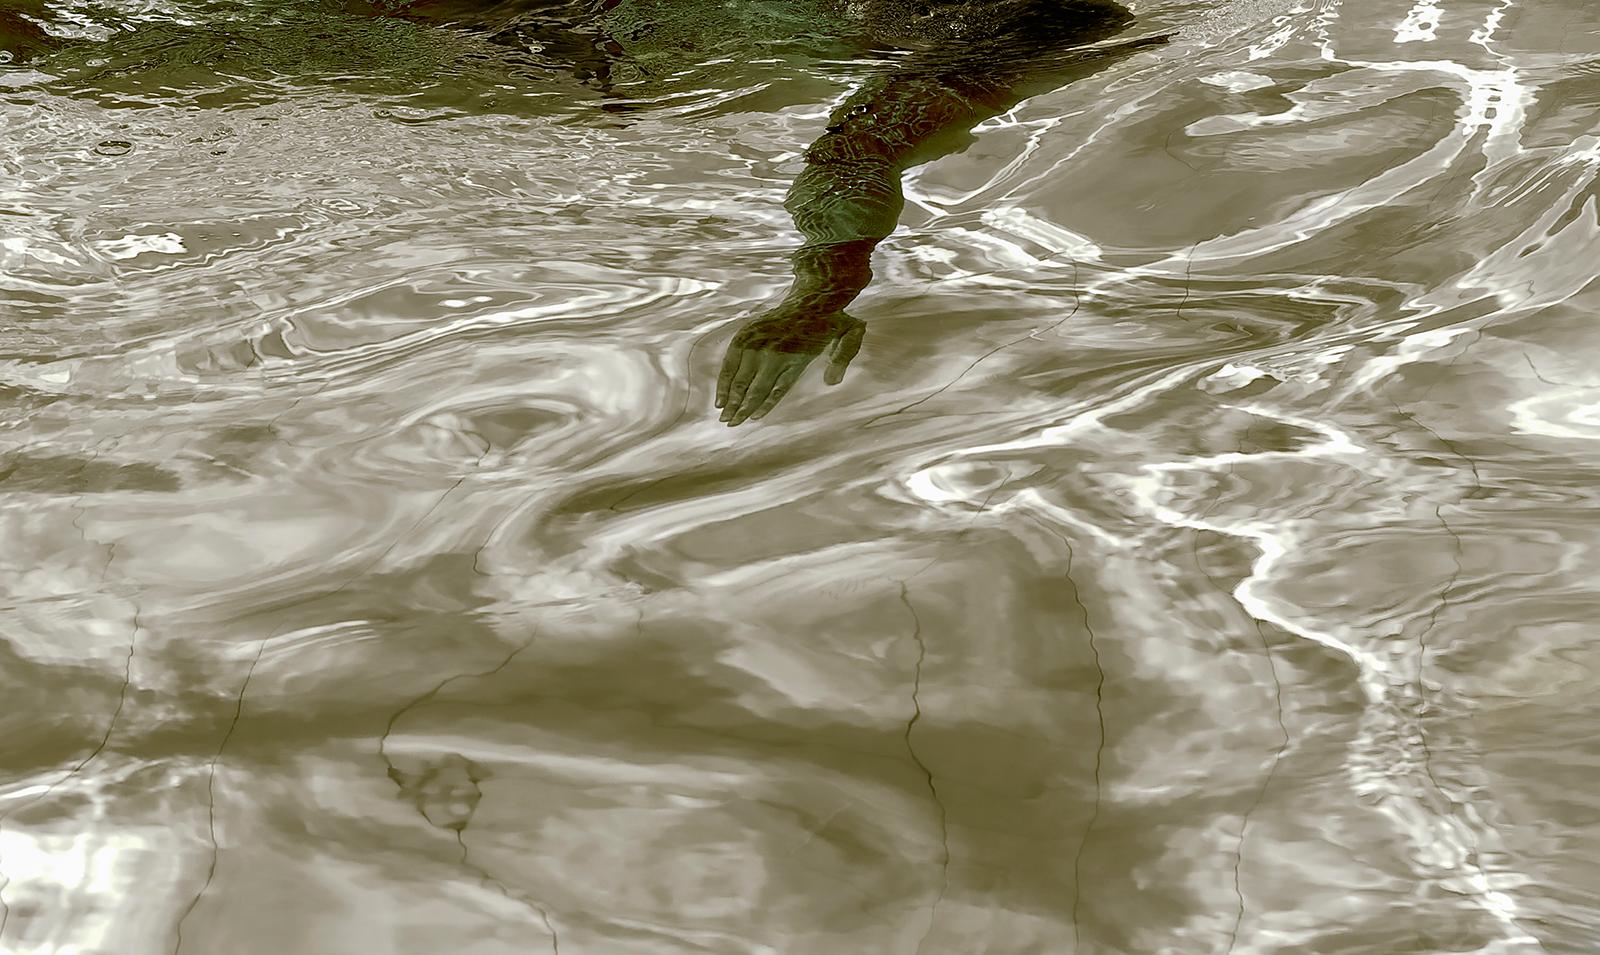 Swim - Signierter zeitgenössischer Druck in limitierter Auflage, Farbfoto POOL, figurativ (Zeitgenössisch), Photograph, von Ian Sanderson